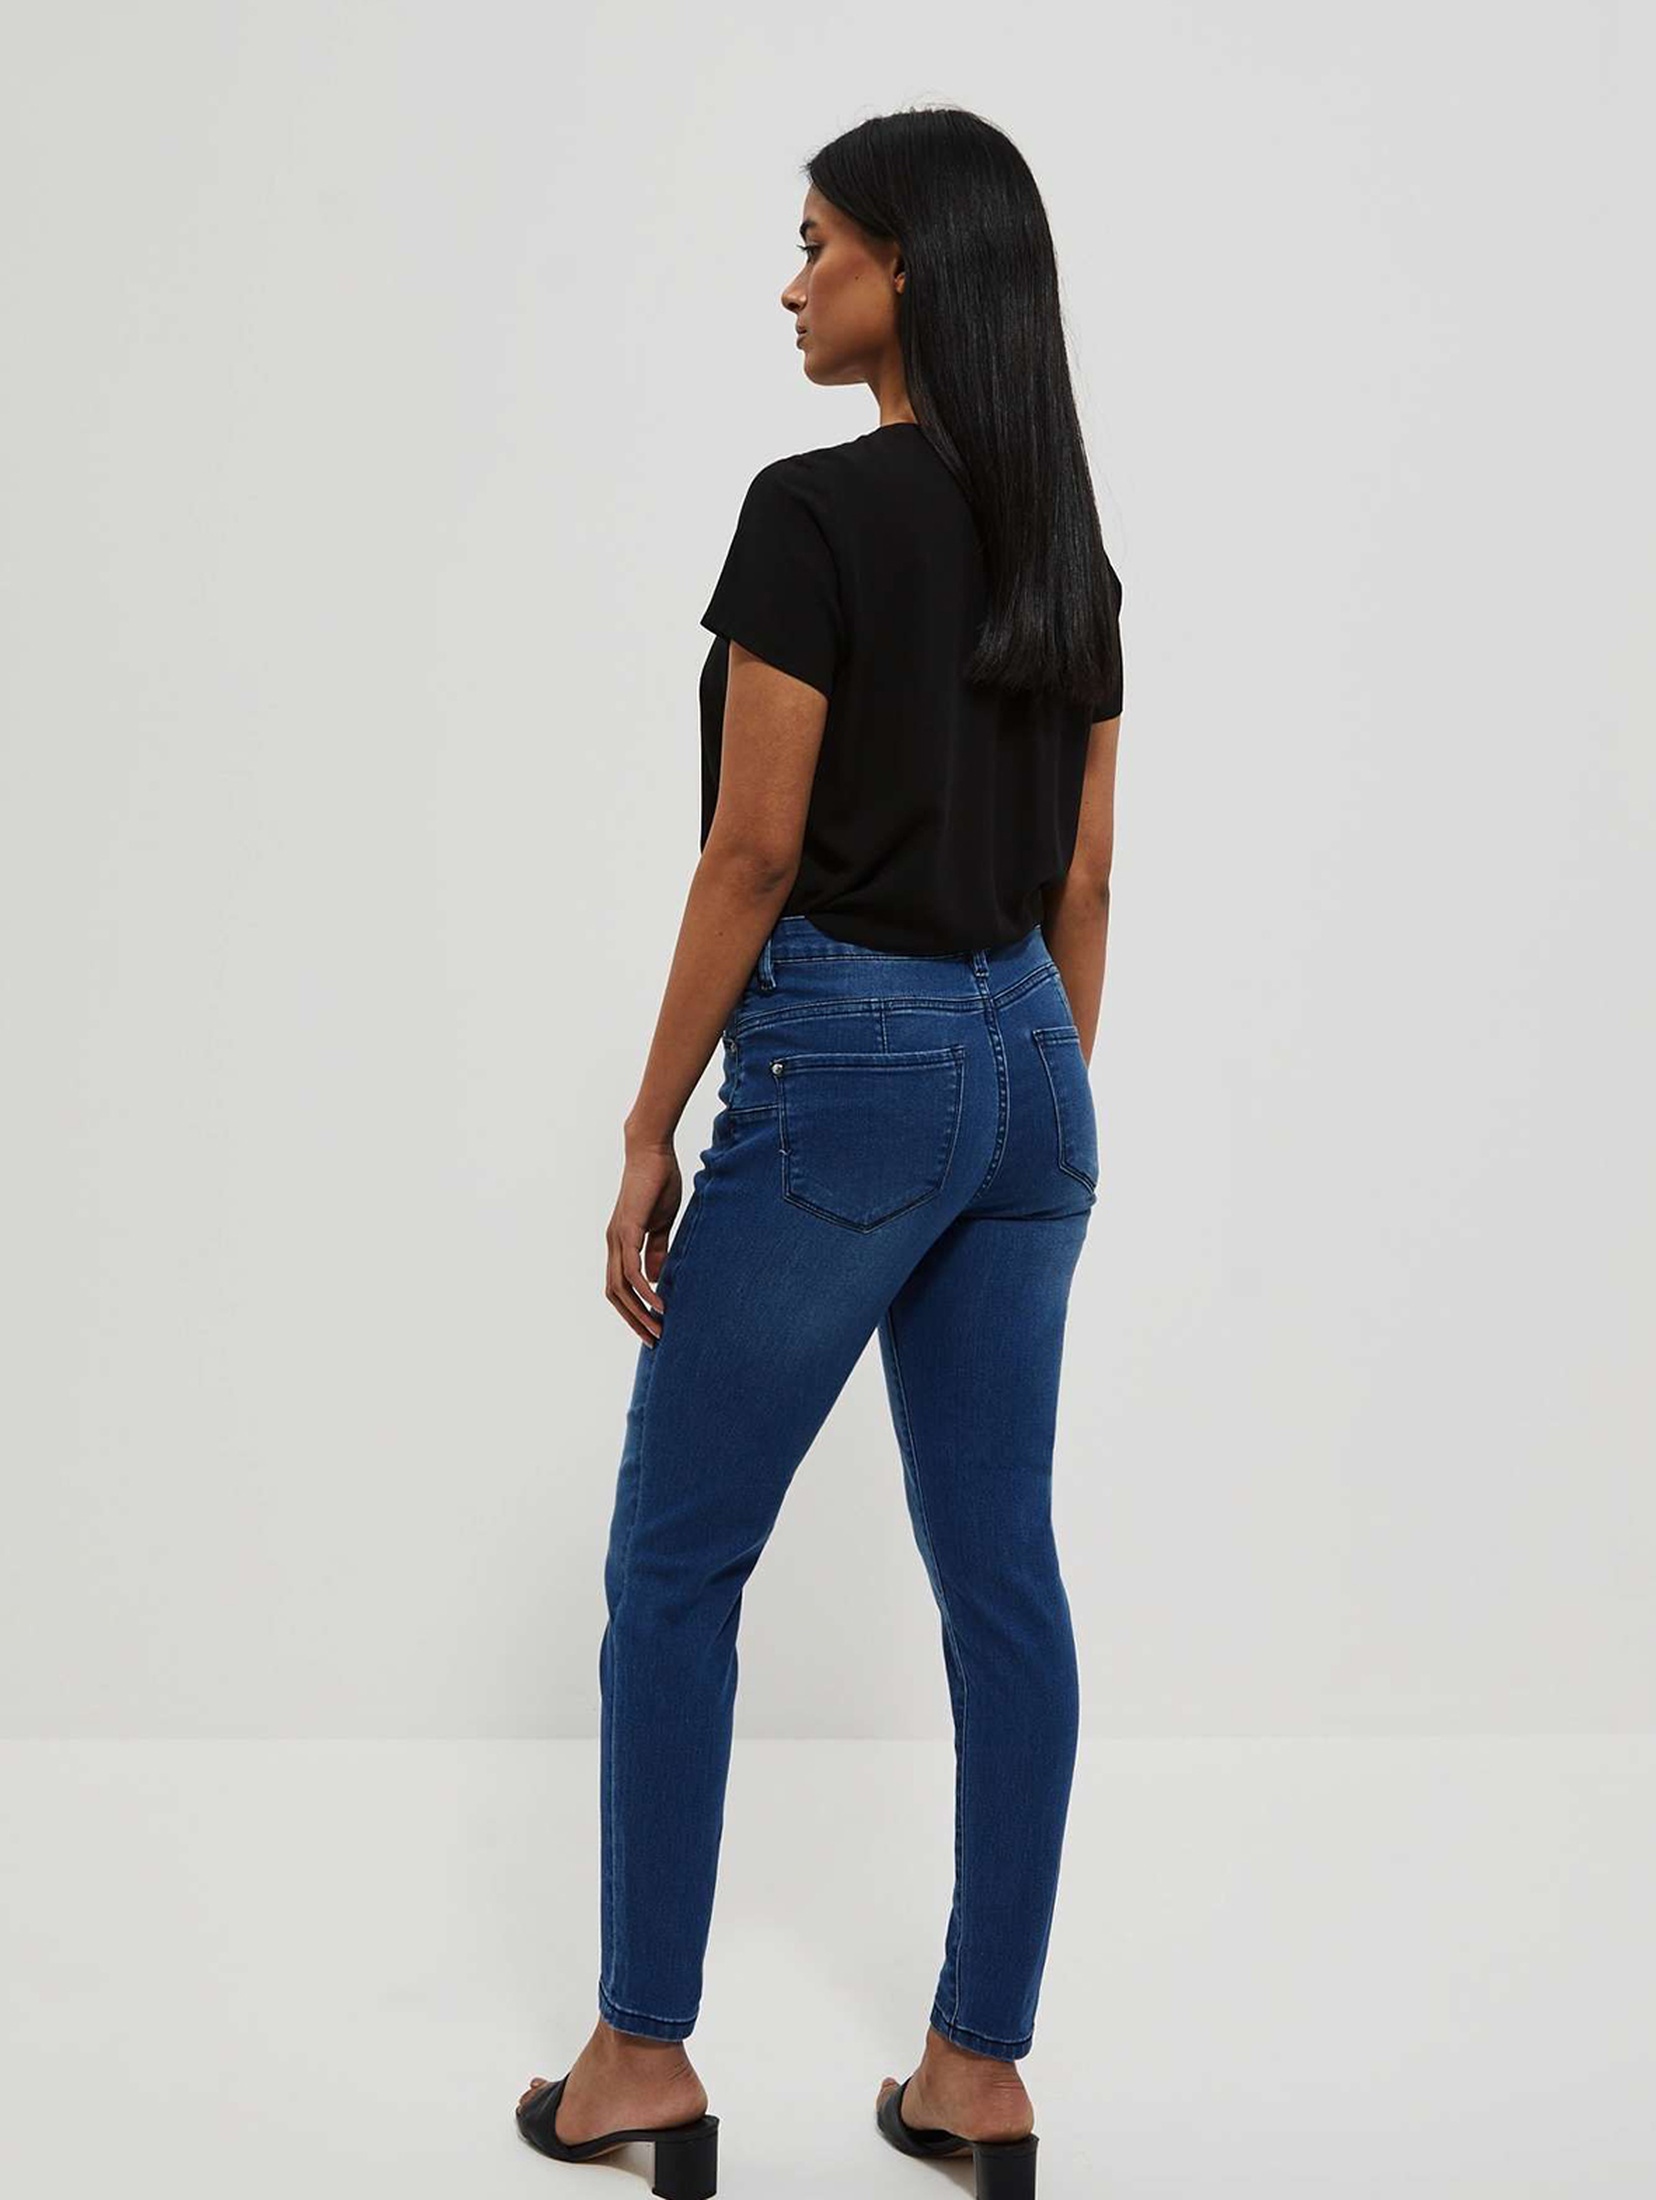 Spodnie damskie jeansowe typu push up